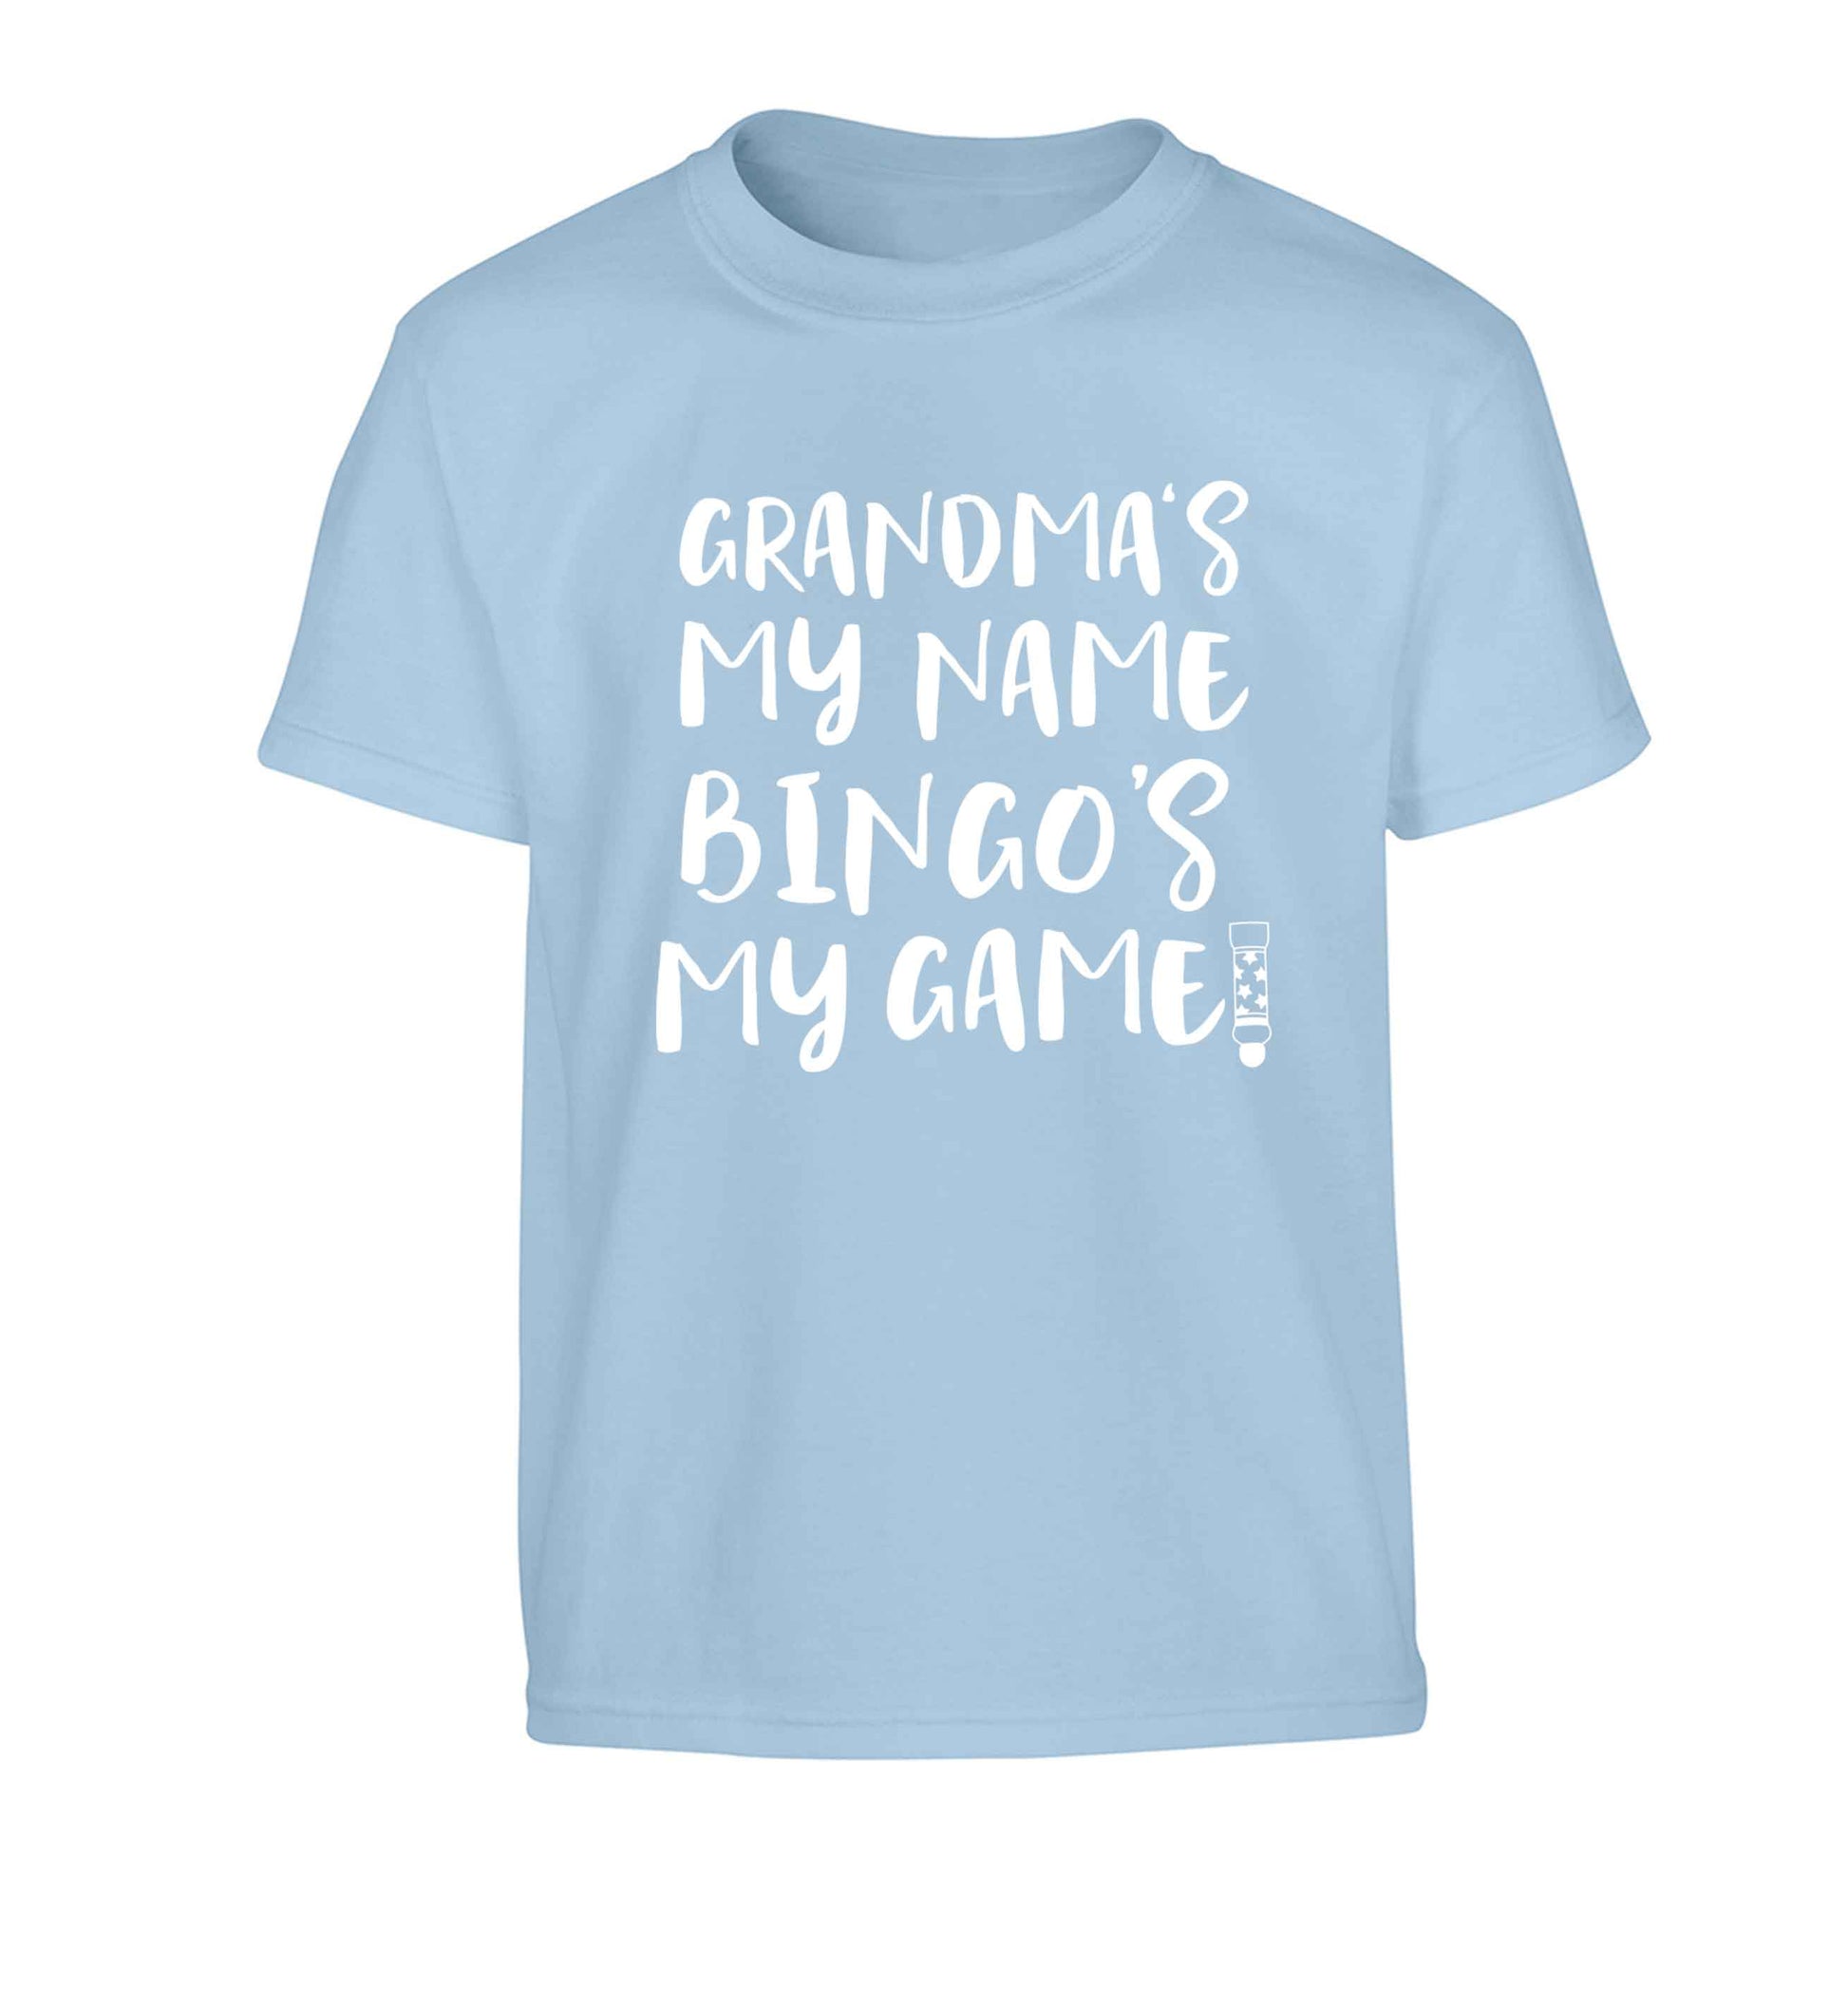 Grandma's my name bingo's my game! Children's light blue Tshirt 12-13 Years